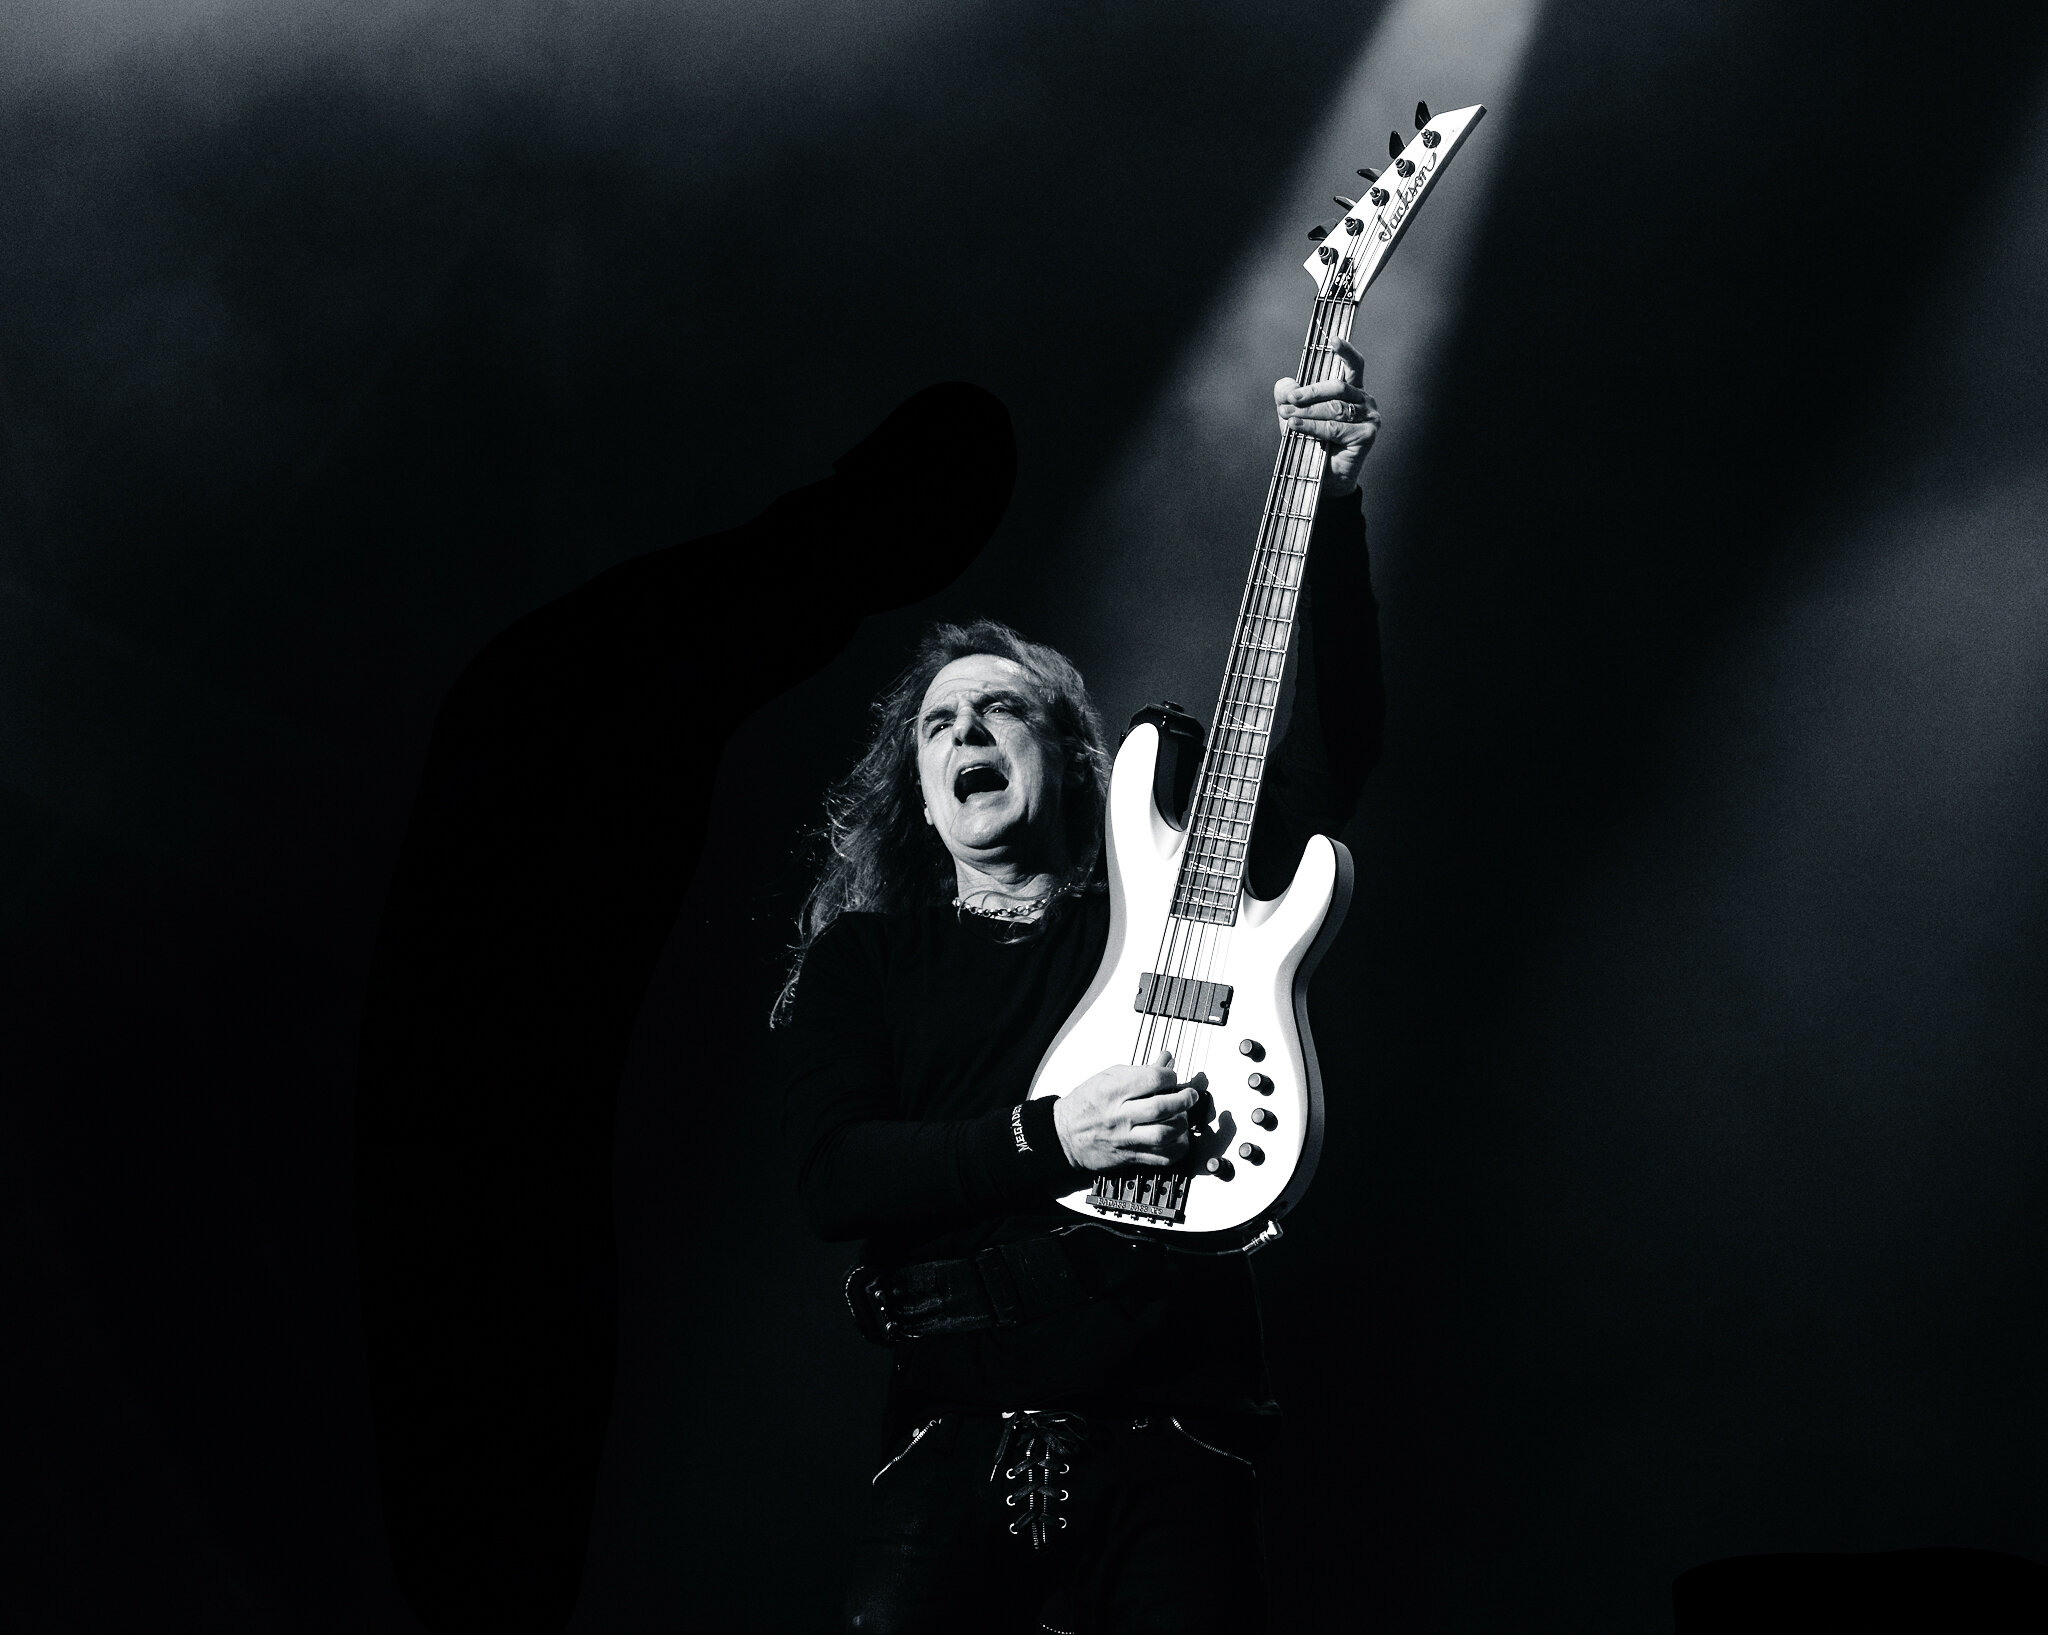 Dave Ellefson of Megadeth